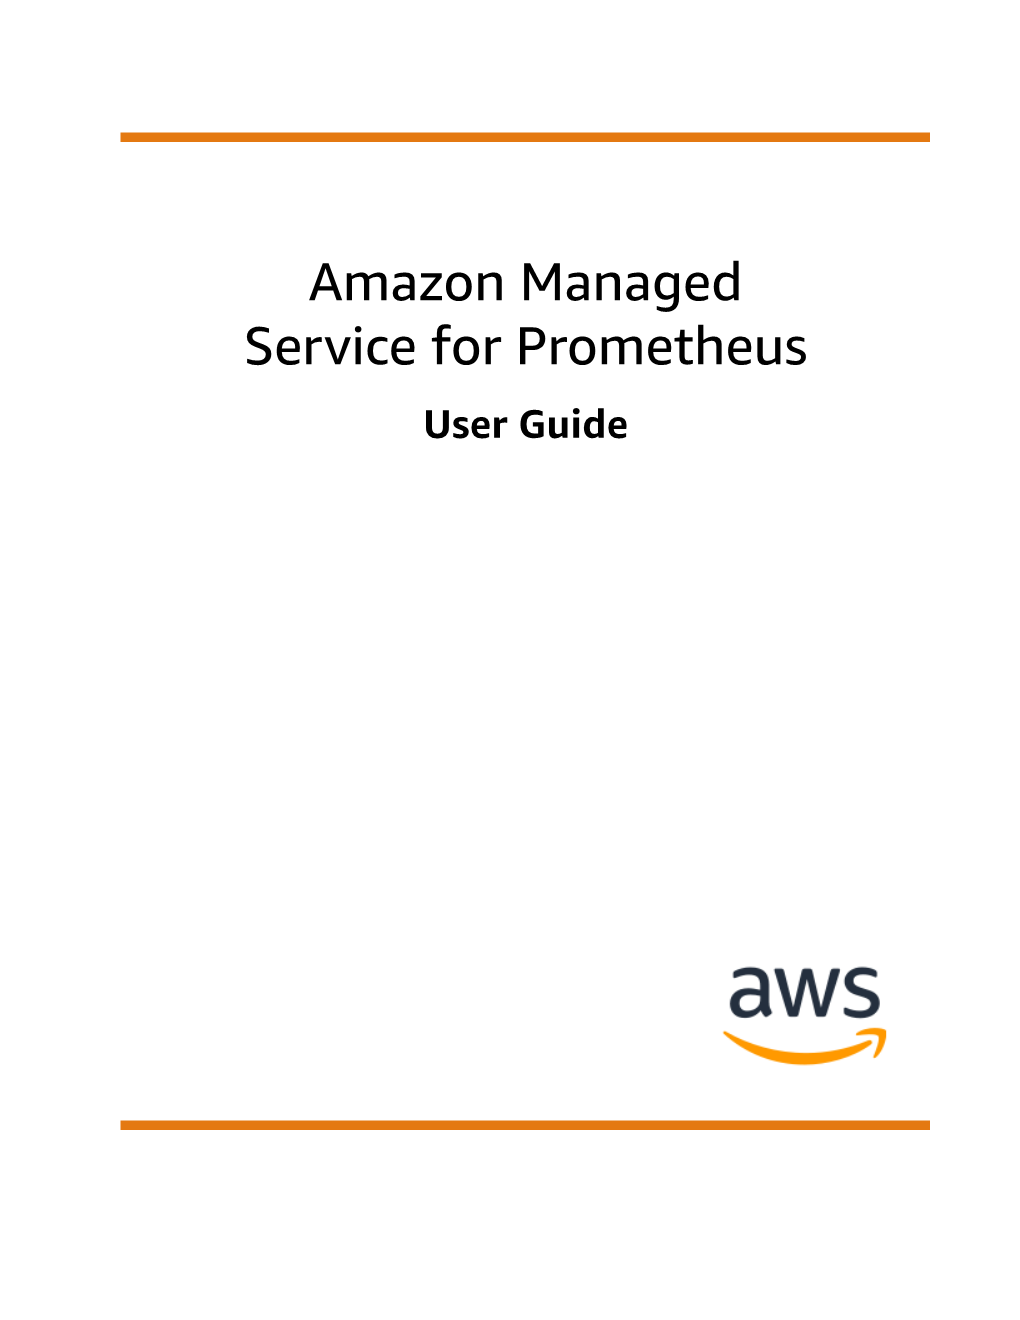 Amazon Managed Service for Prometheus User Guide Amazon Managed Service for Prometheus User Guide